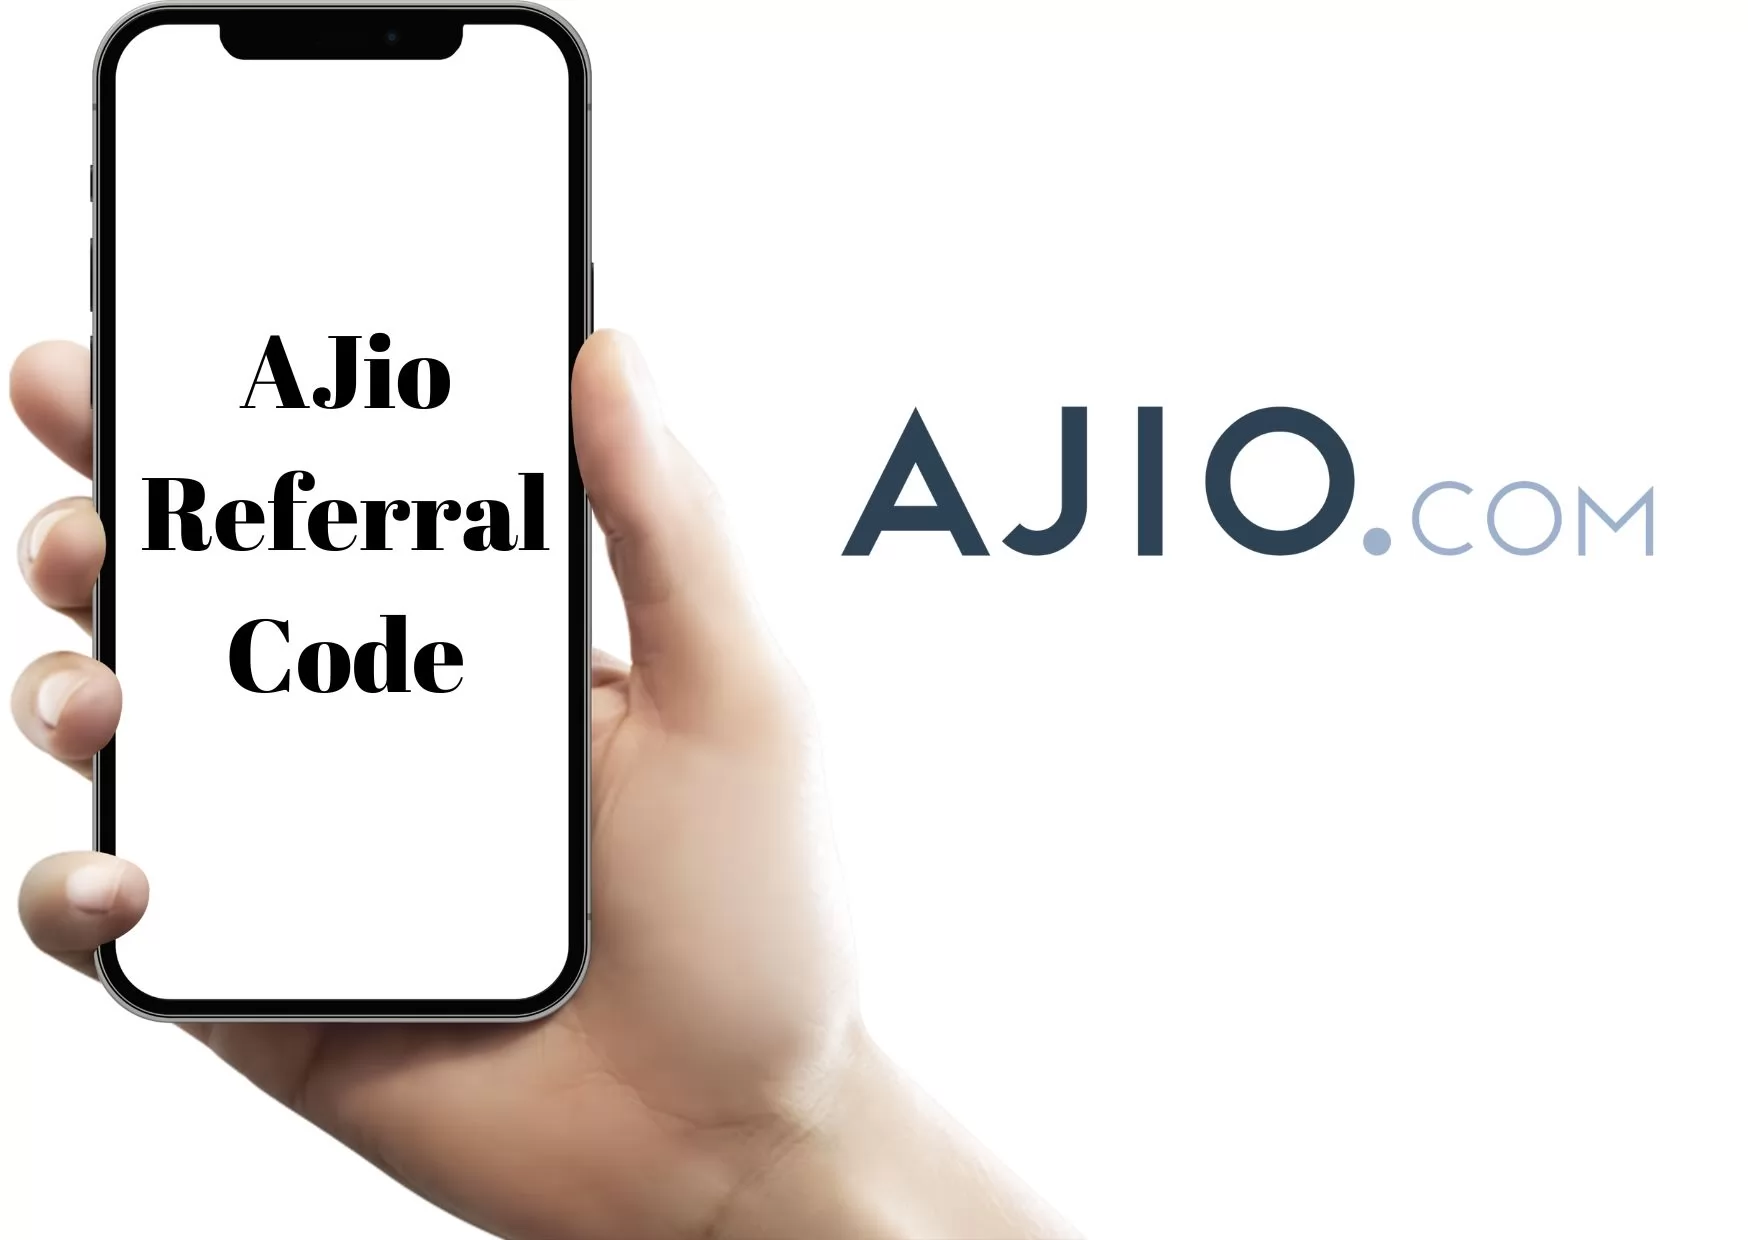 AJio Referral Code